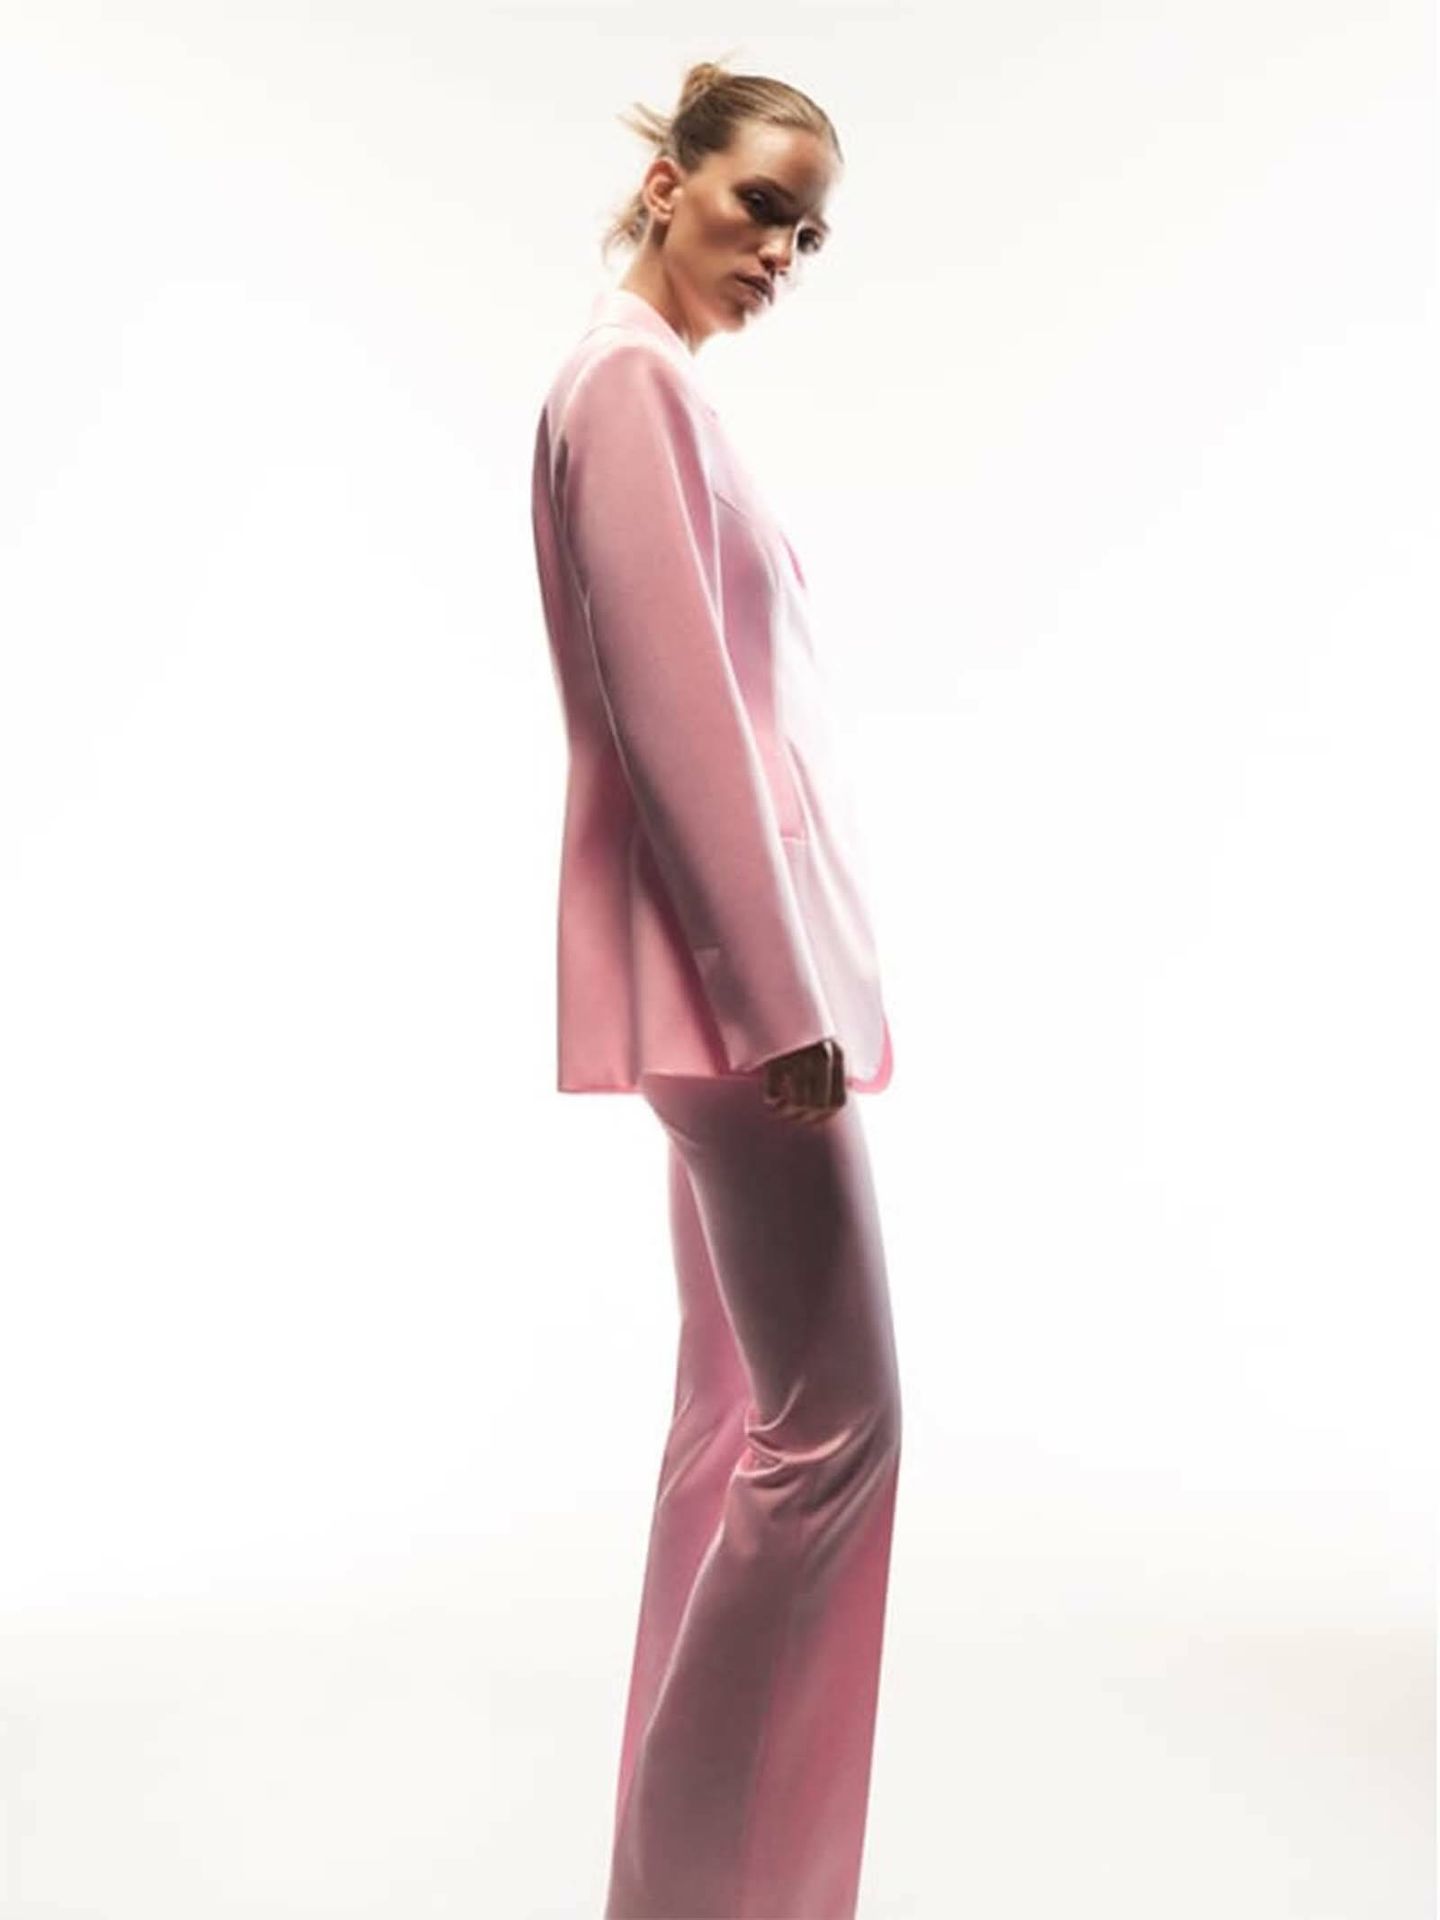 Un traje rosa similar al de la reina Letizia. (Zara/Cortesía)